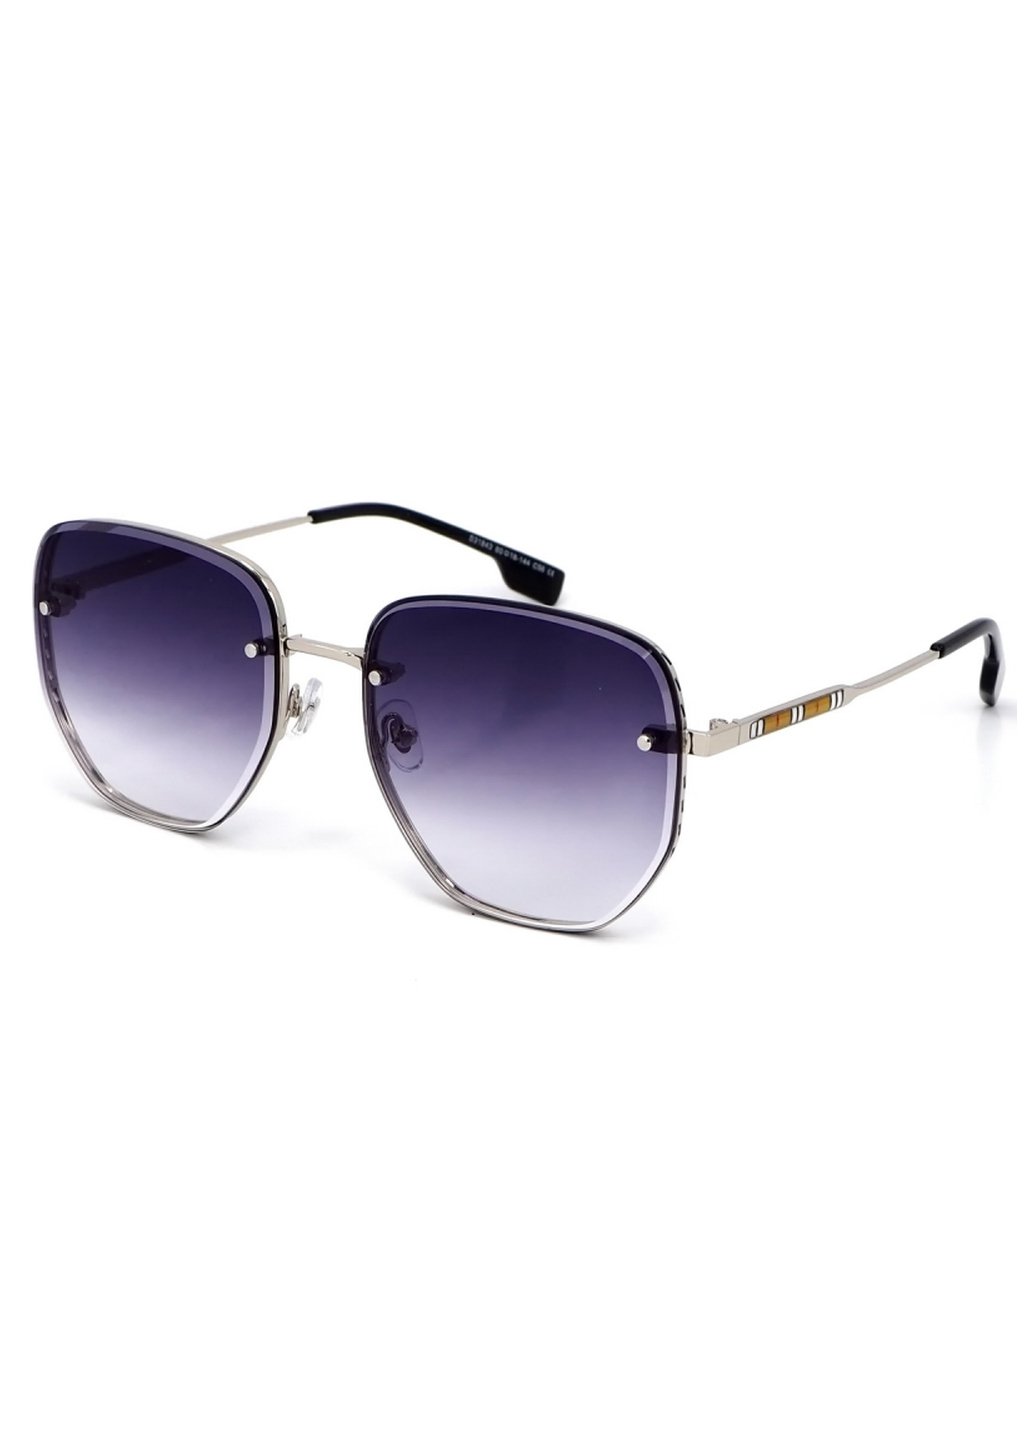 Купить Женские солнцезащитные очки Merlini с поляризацией S31843 117130 - Серебристый в интернет-магазине